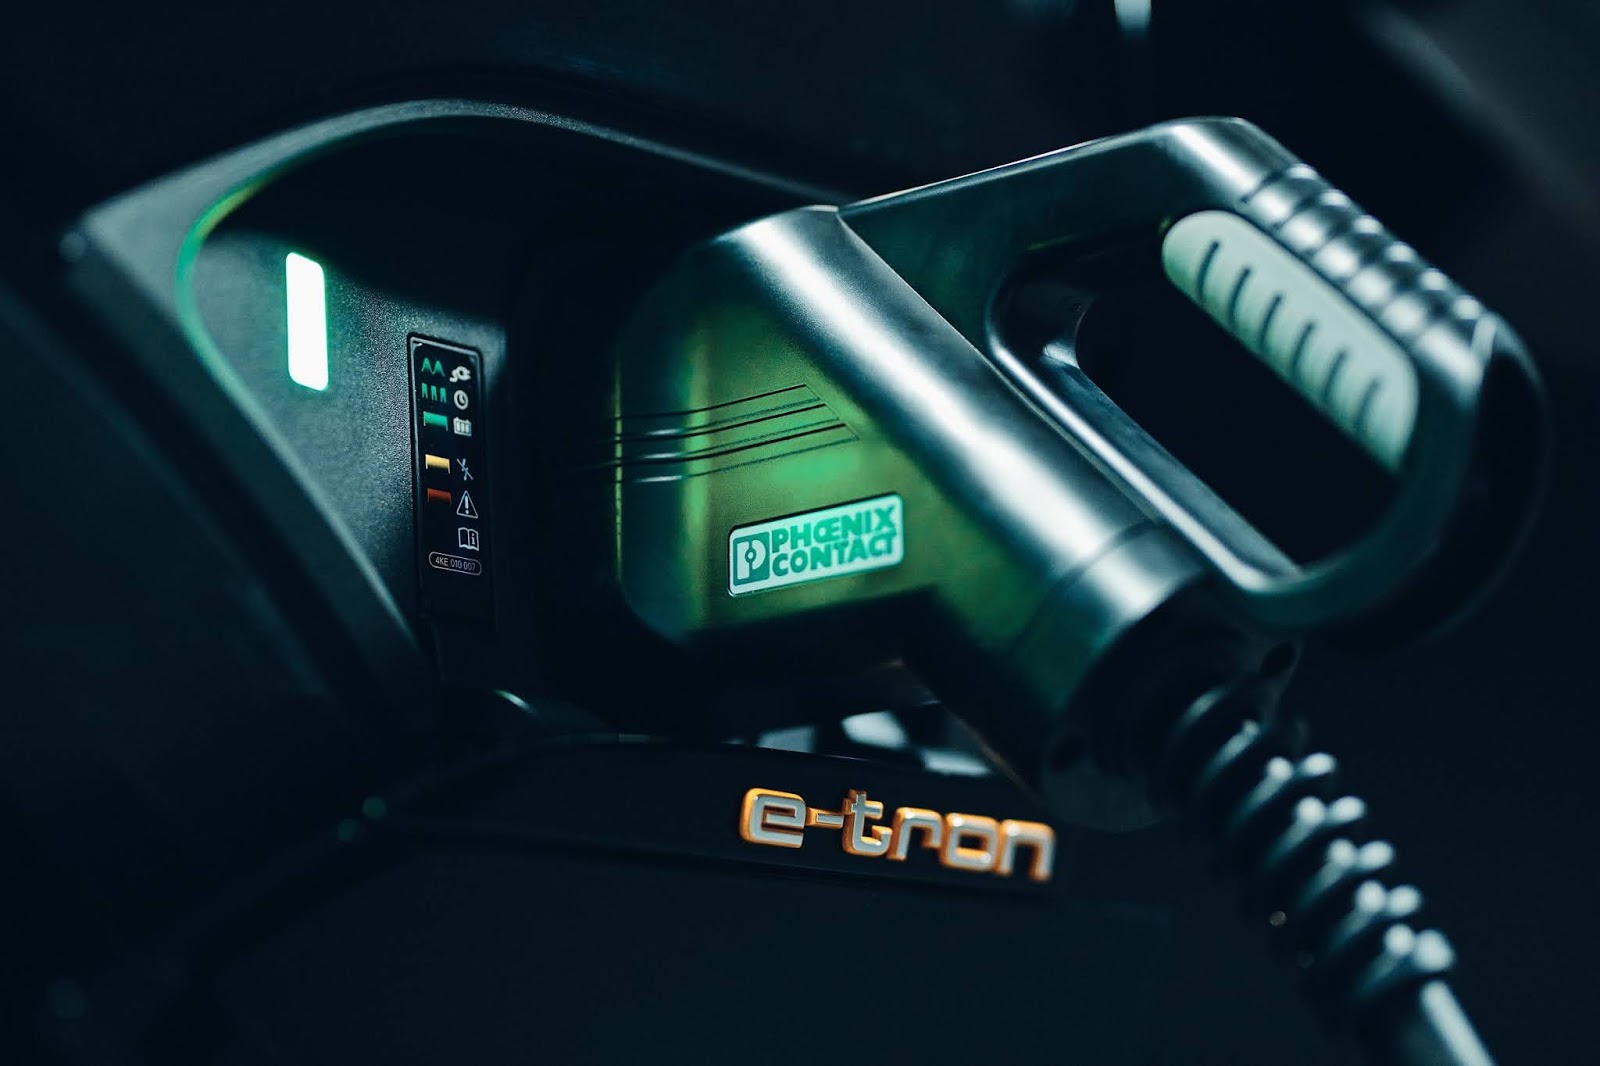 AUDI2B 2B25CE259125CE259C25CE25A625CE259925CE259425CE25A125CE259F25CE259C25CE25972B25CE25A625CE259F25CE25A125CE25A425CE259925CE25A325CE2597 2 Αμφίδρομη φόρτιση: η Audi ερευνά επιπλέον οφέλη από την ηλεκτροκίνηση